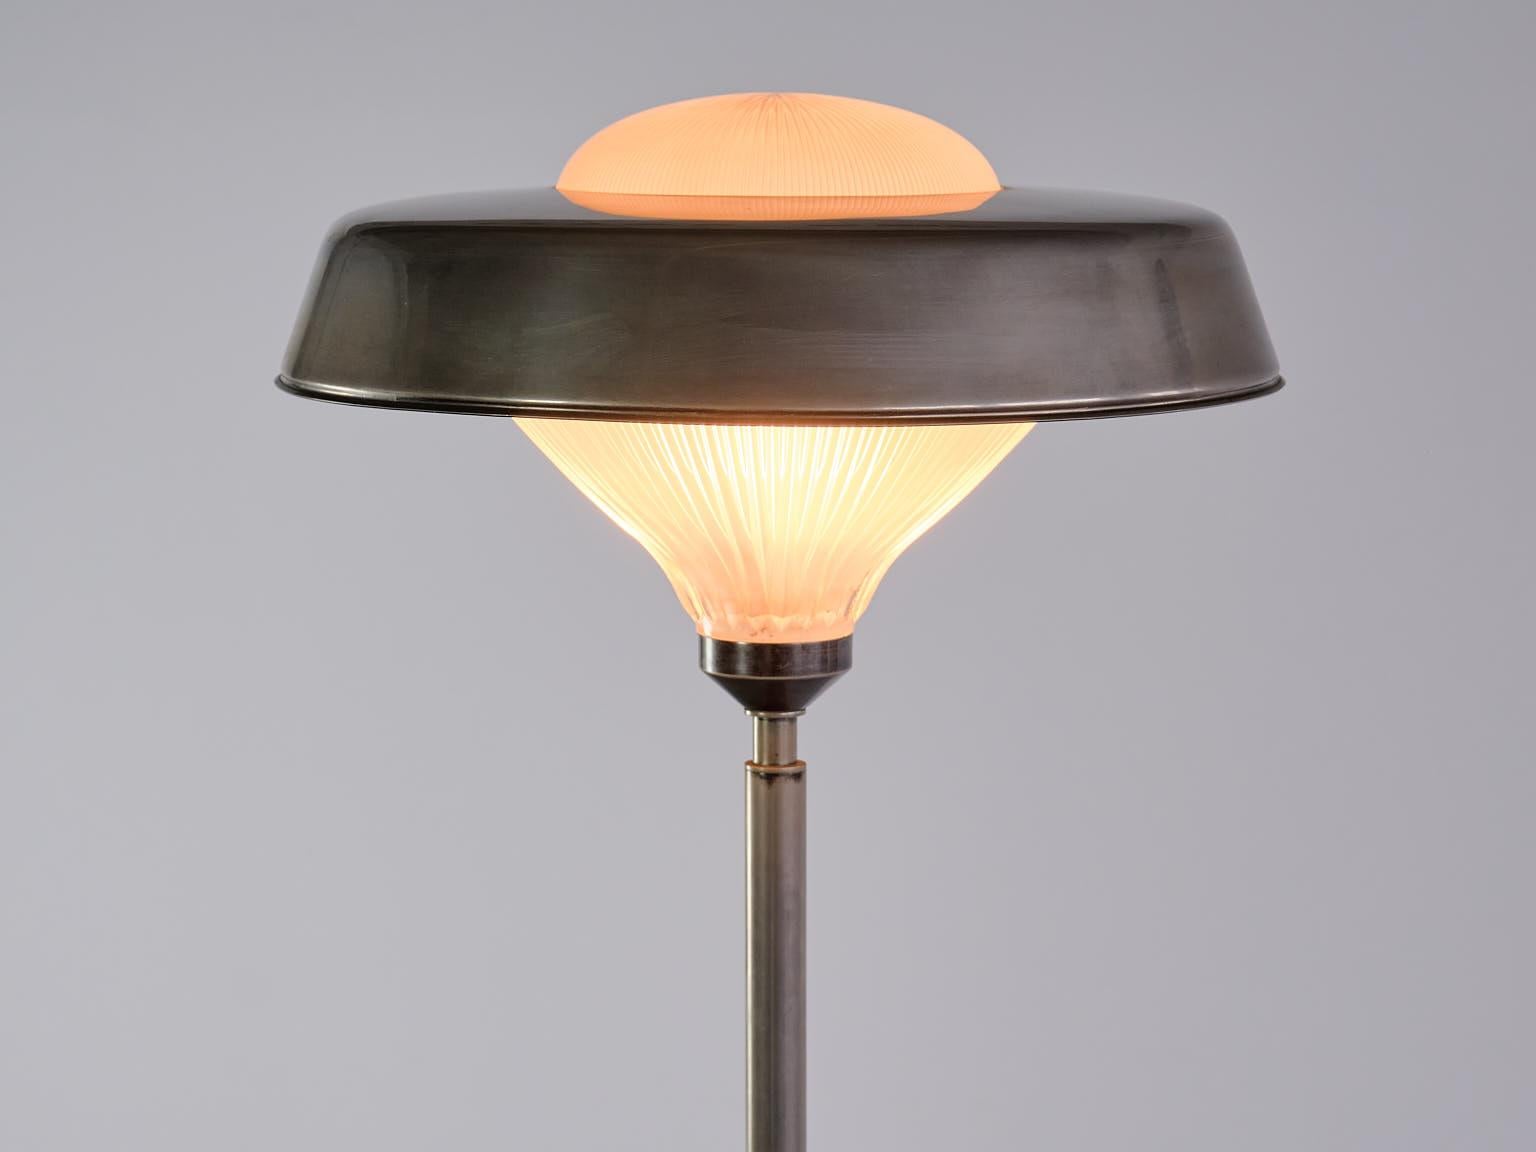 Italian Studio BBPR 'Talia' Floor Lamp in Steel and Glass, Artemide, Italy, 1962 For Sale